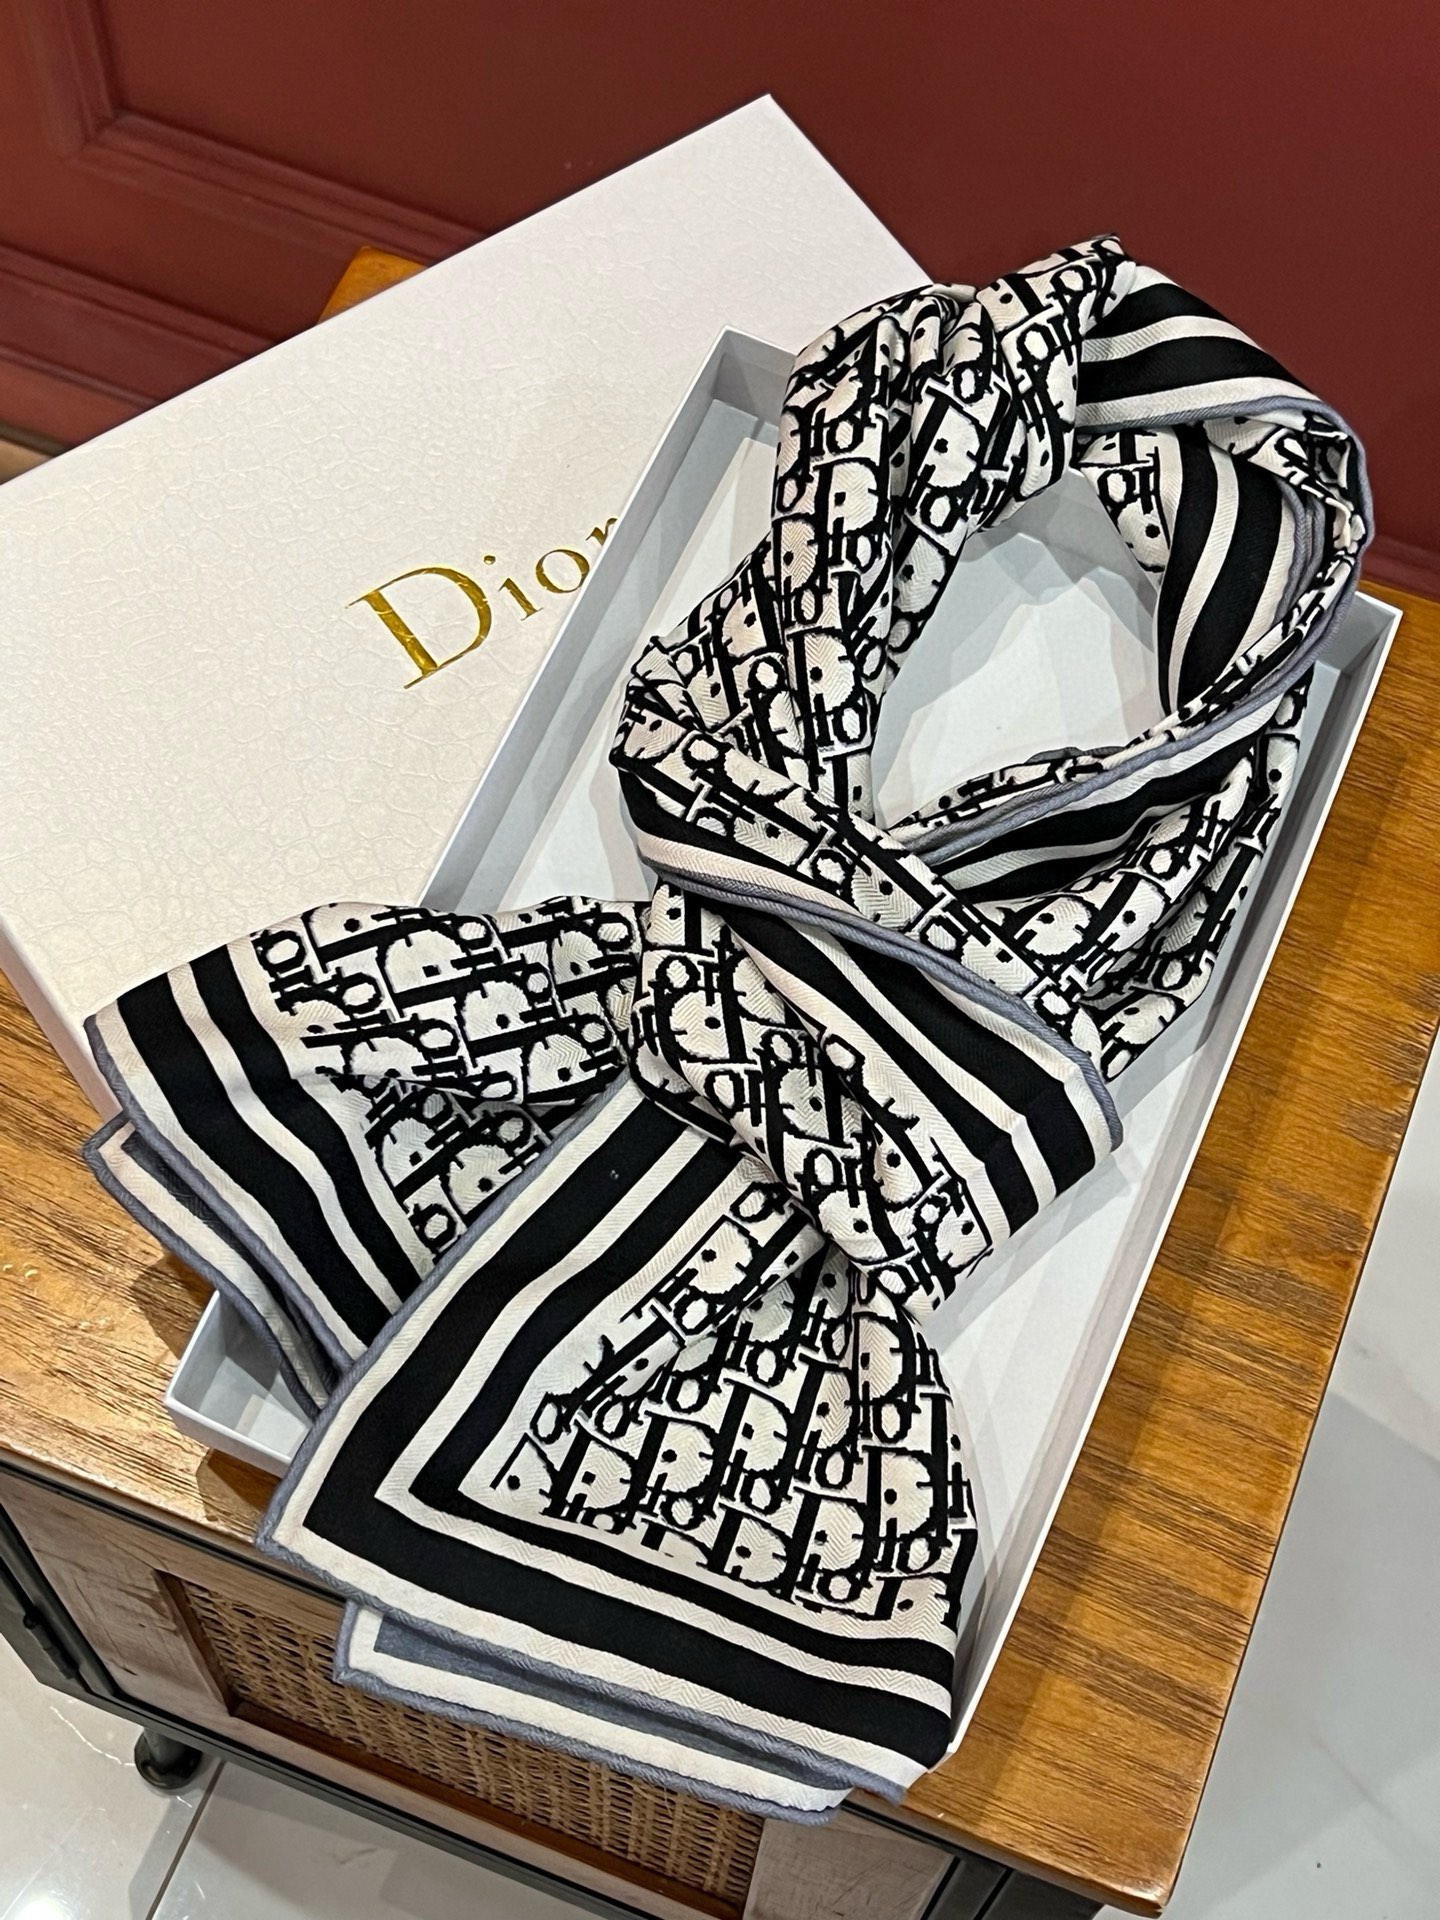 开春新款Dior双面双面羊绒围巾超级抬气色！高级女人味！羊绒围巾也能这么美！！！这款双面D字母羊绒围巾真